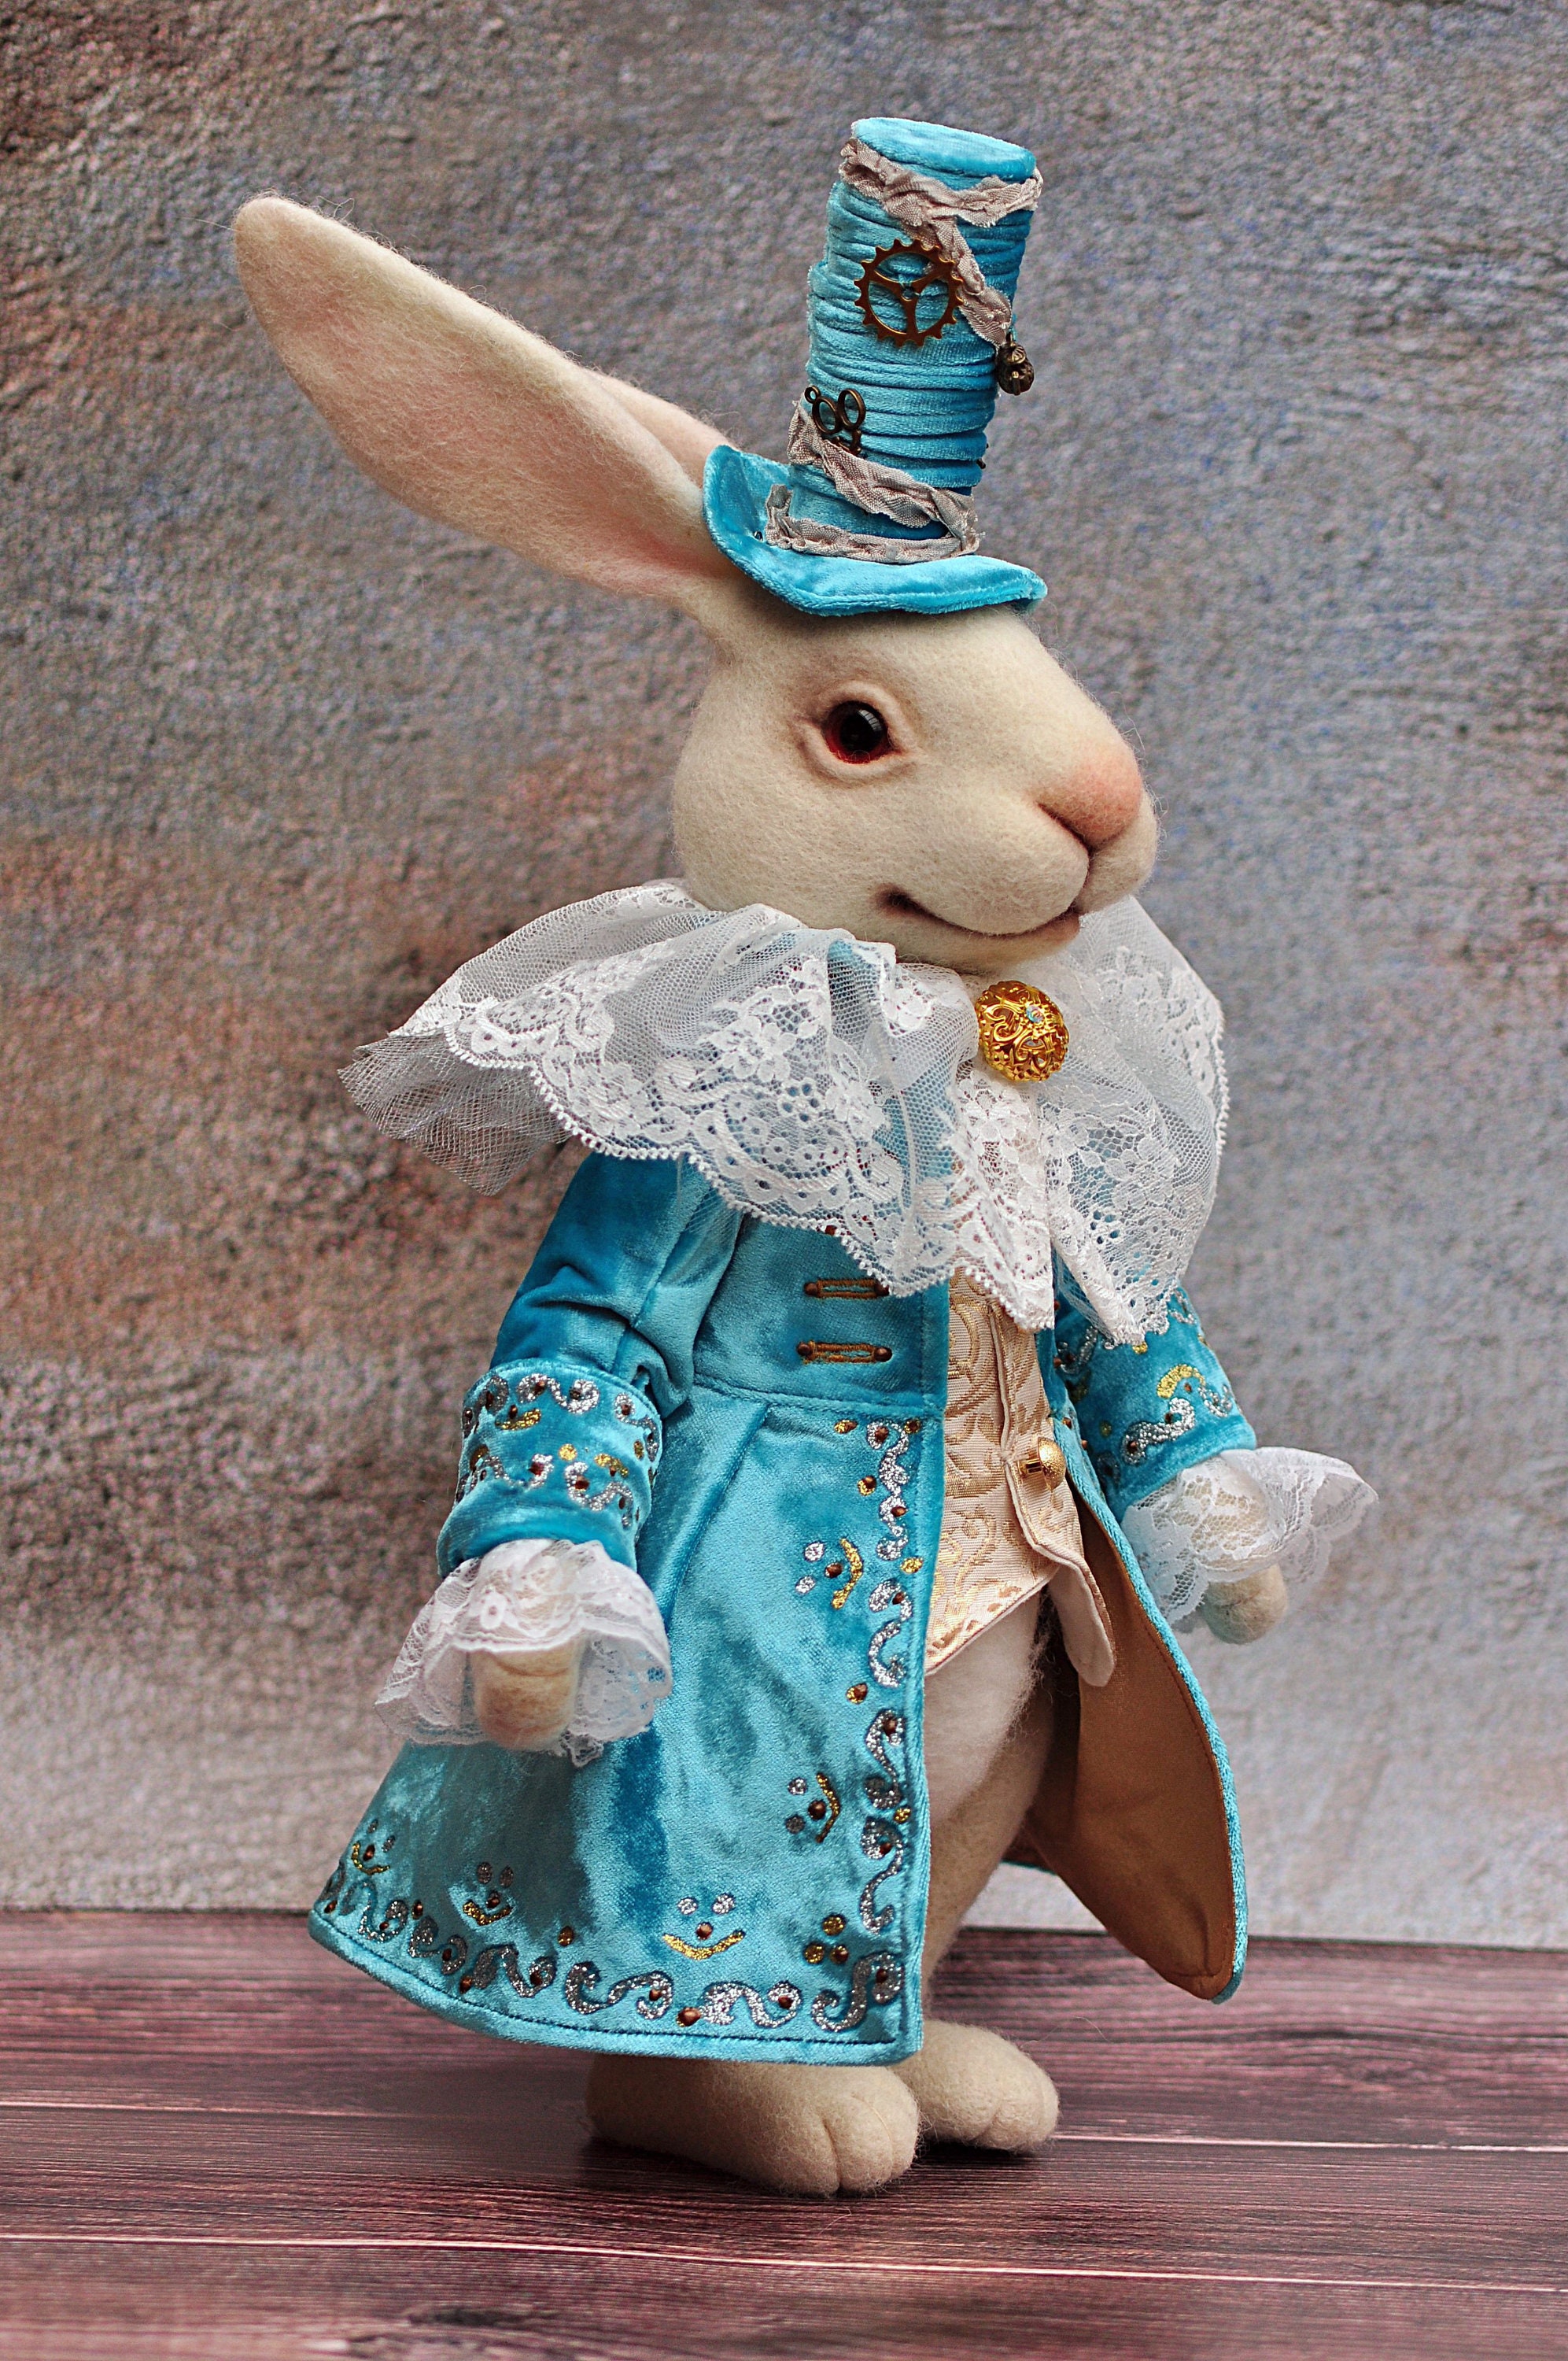 Weißes Kaninchen/OOAK weißes Kaninchen/Filz Kaninchen Art  Doll/Nadelgefilzte Kaninchen/Weiße Kaninchen Ornament/Baby-Dusche-Geschenk/Kinderzimmer  Dekor/Kaninchen Puppe - .de